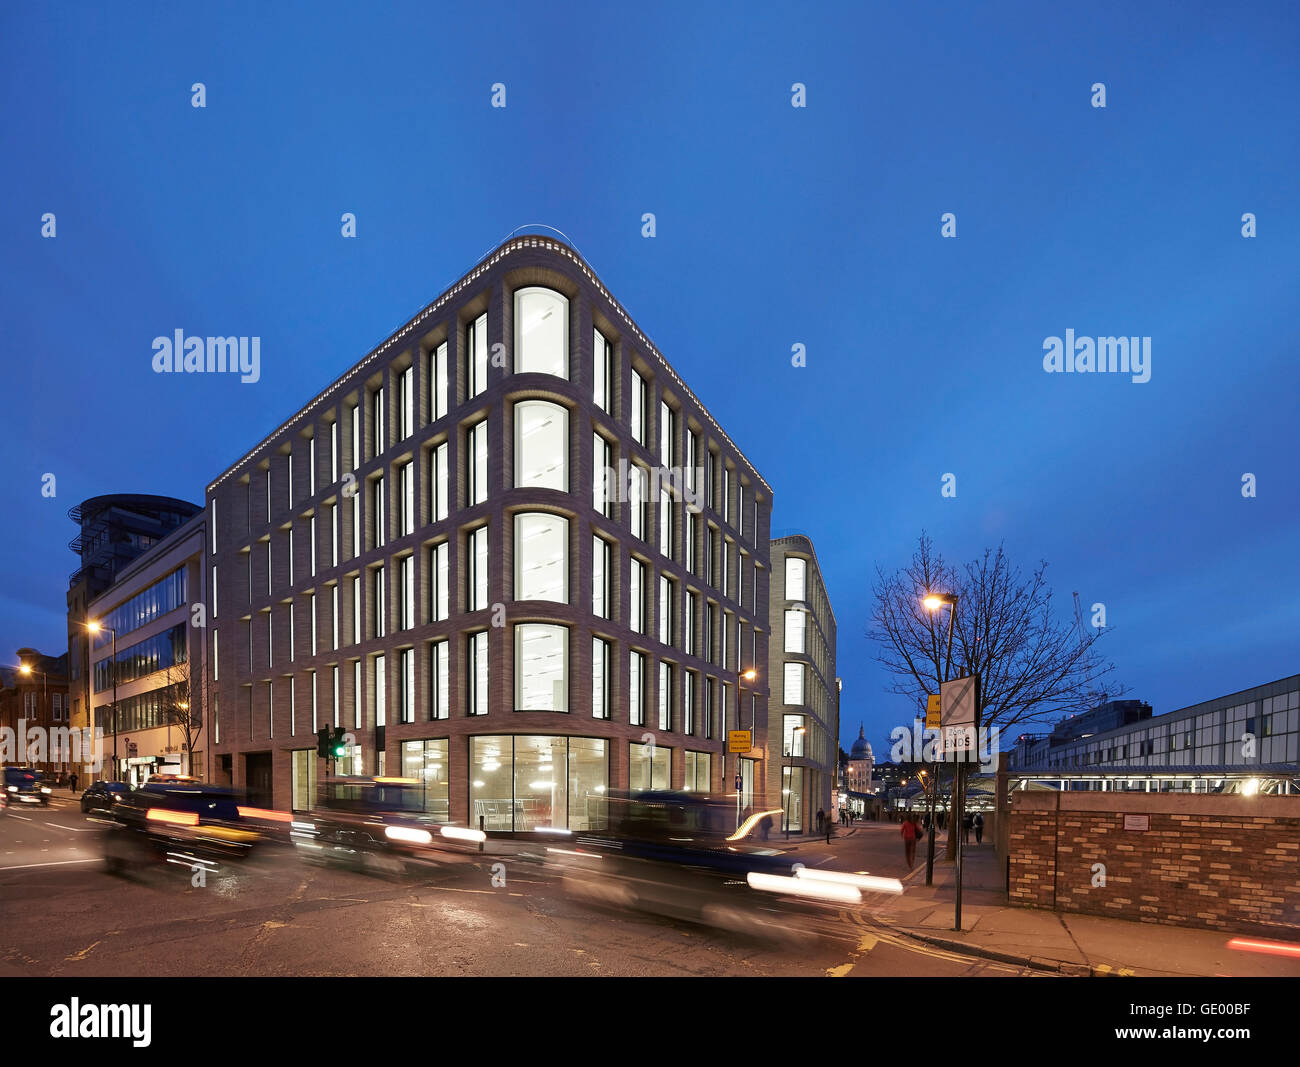 Bâtiment avec scène de rue au crépuscule. Turnmill Building, Londres, Royaume-Uni. Architecte : Piercy & Company, 2015. Banque D'Images